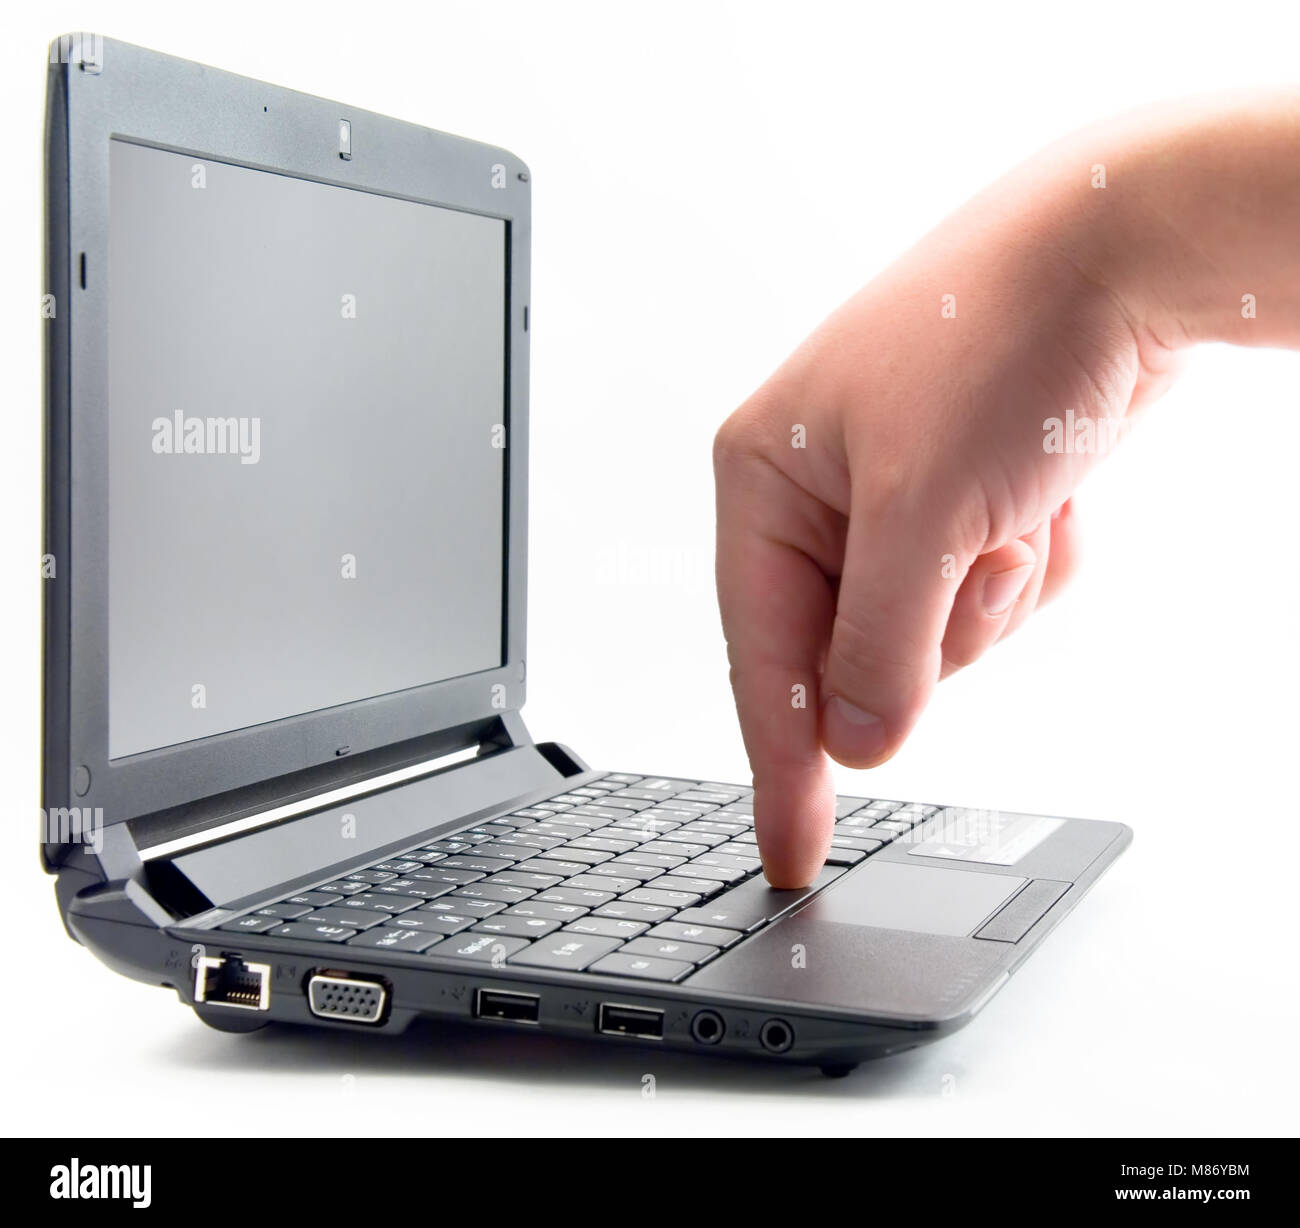 L'homme en appuyant sur la touche espace sur un ordinateur portable Banque D'Images